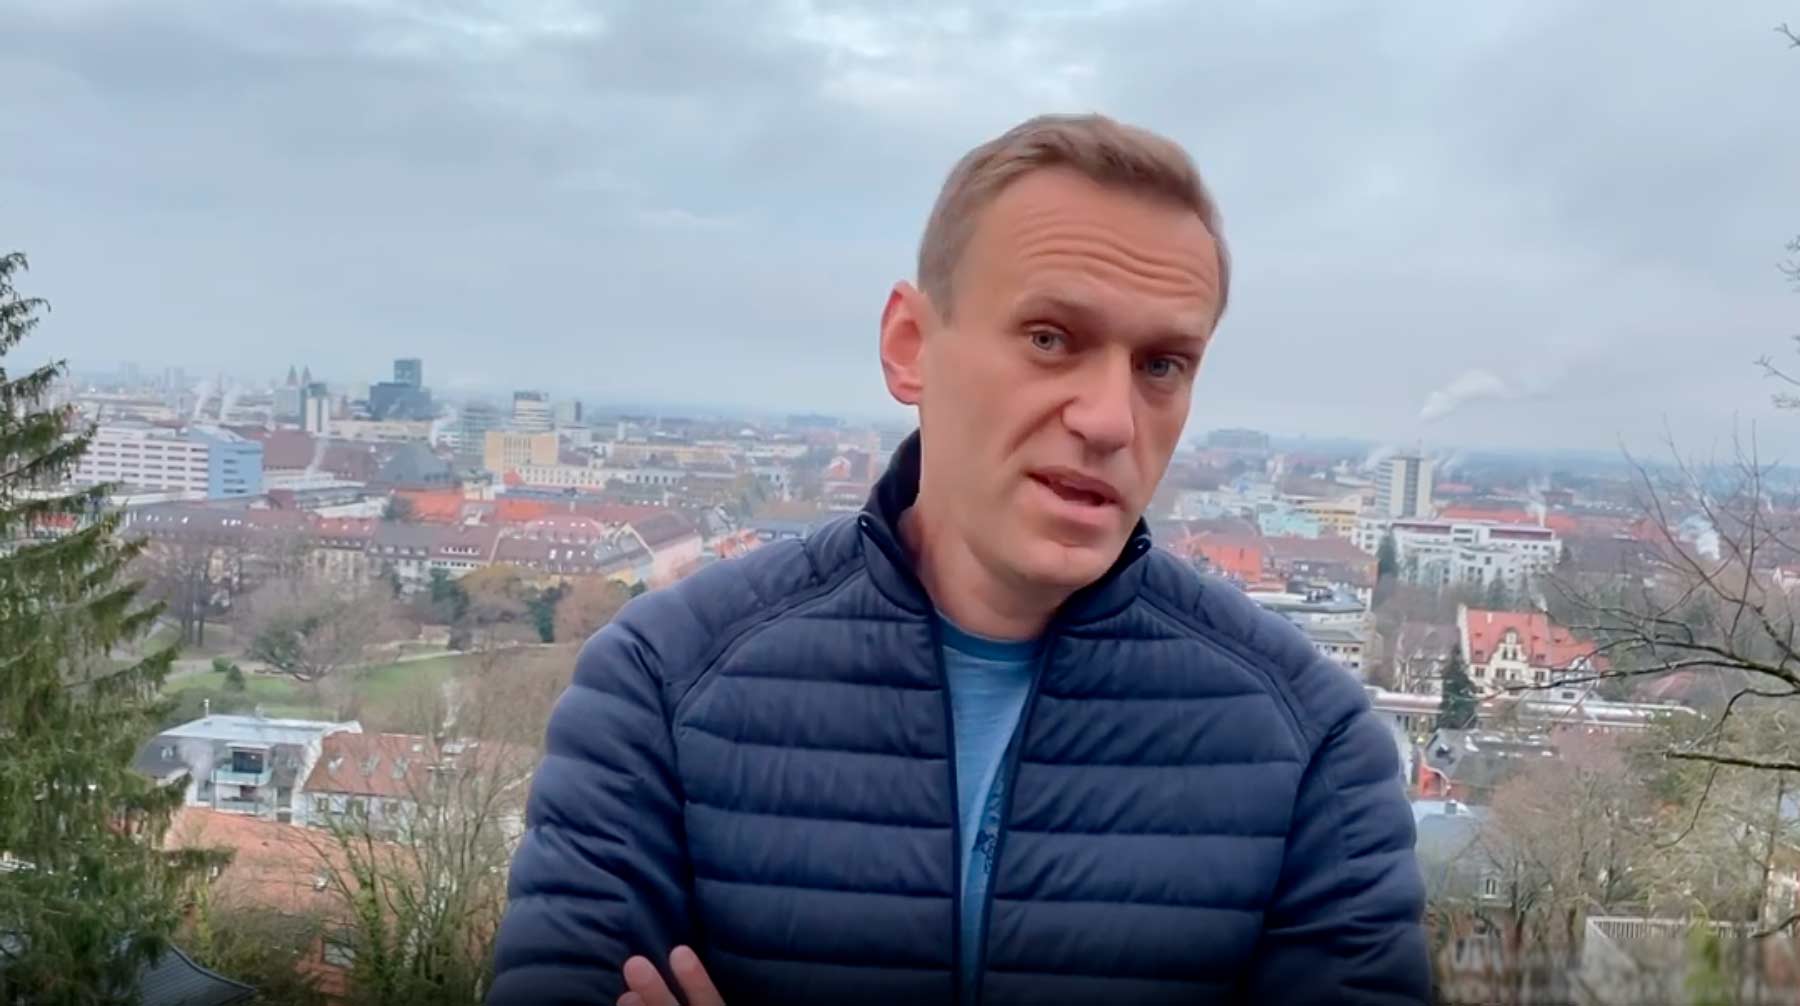 Оппозиционер признался, что живет в спартанских условиях, но у него «все хорошо» Алексей Навальный